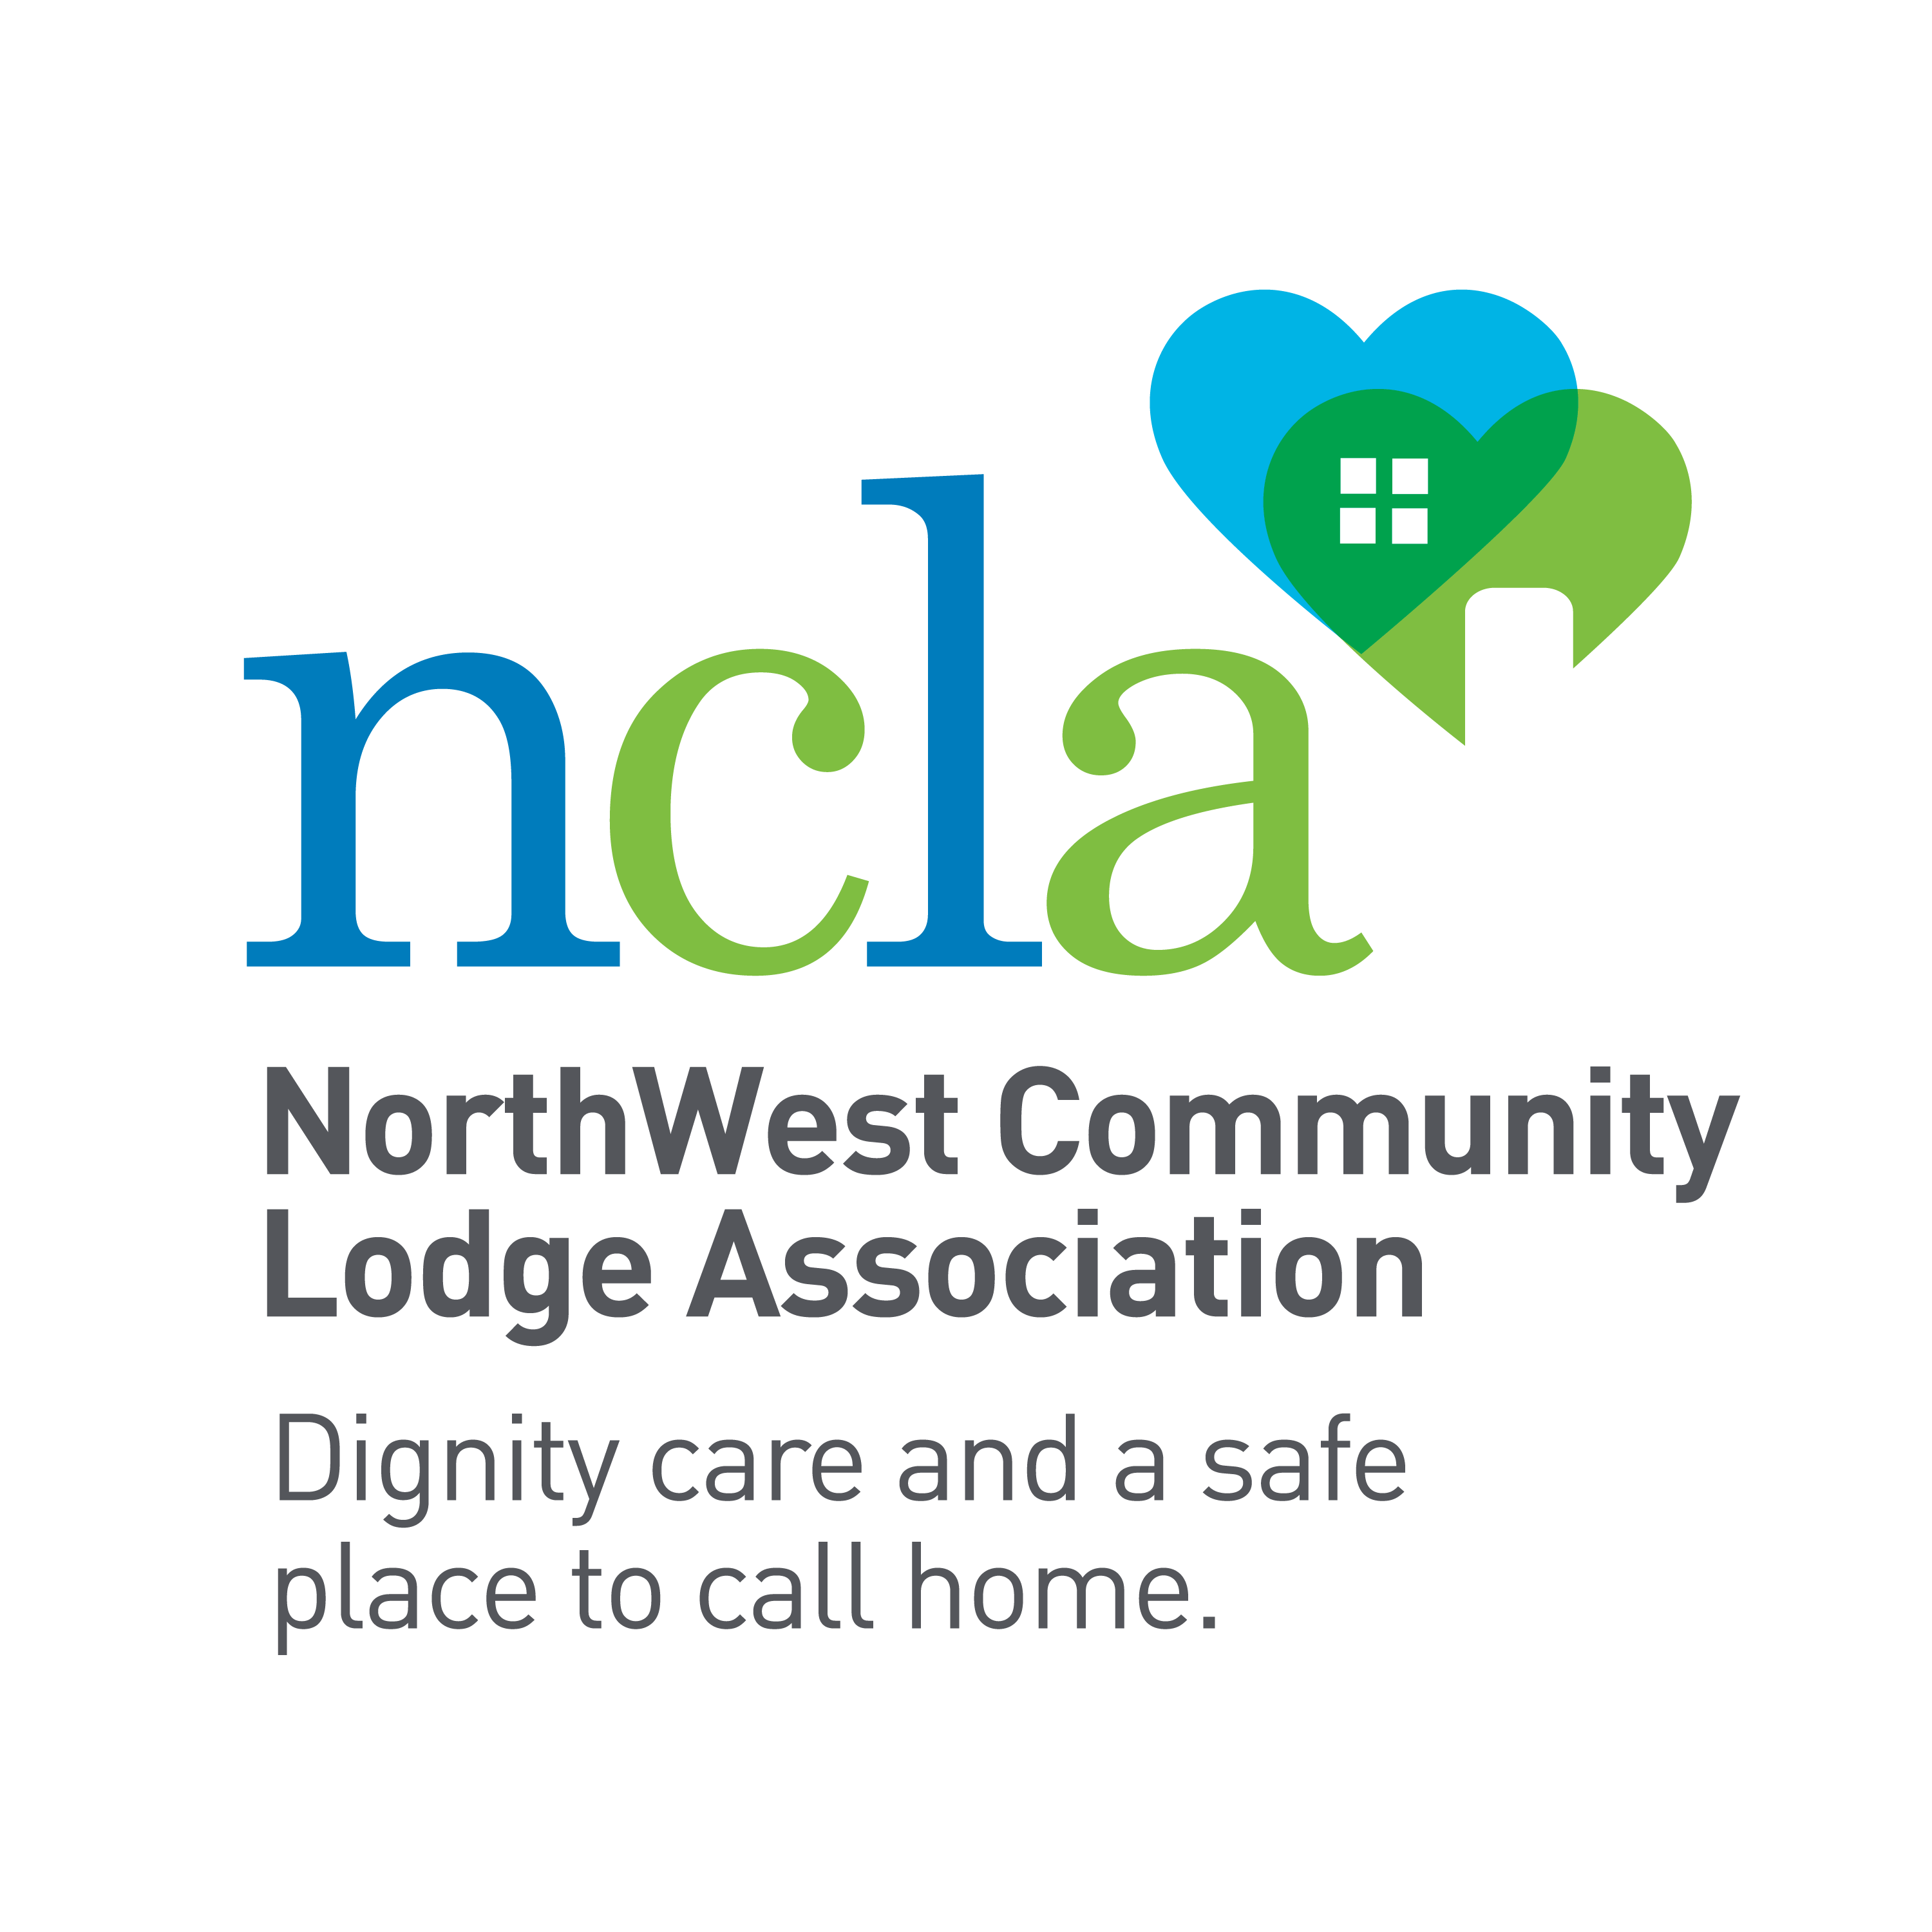 NorthWest Community Lodge Association logo